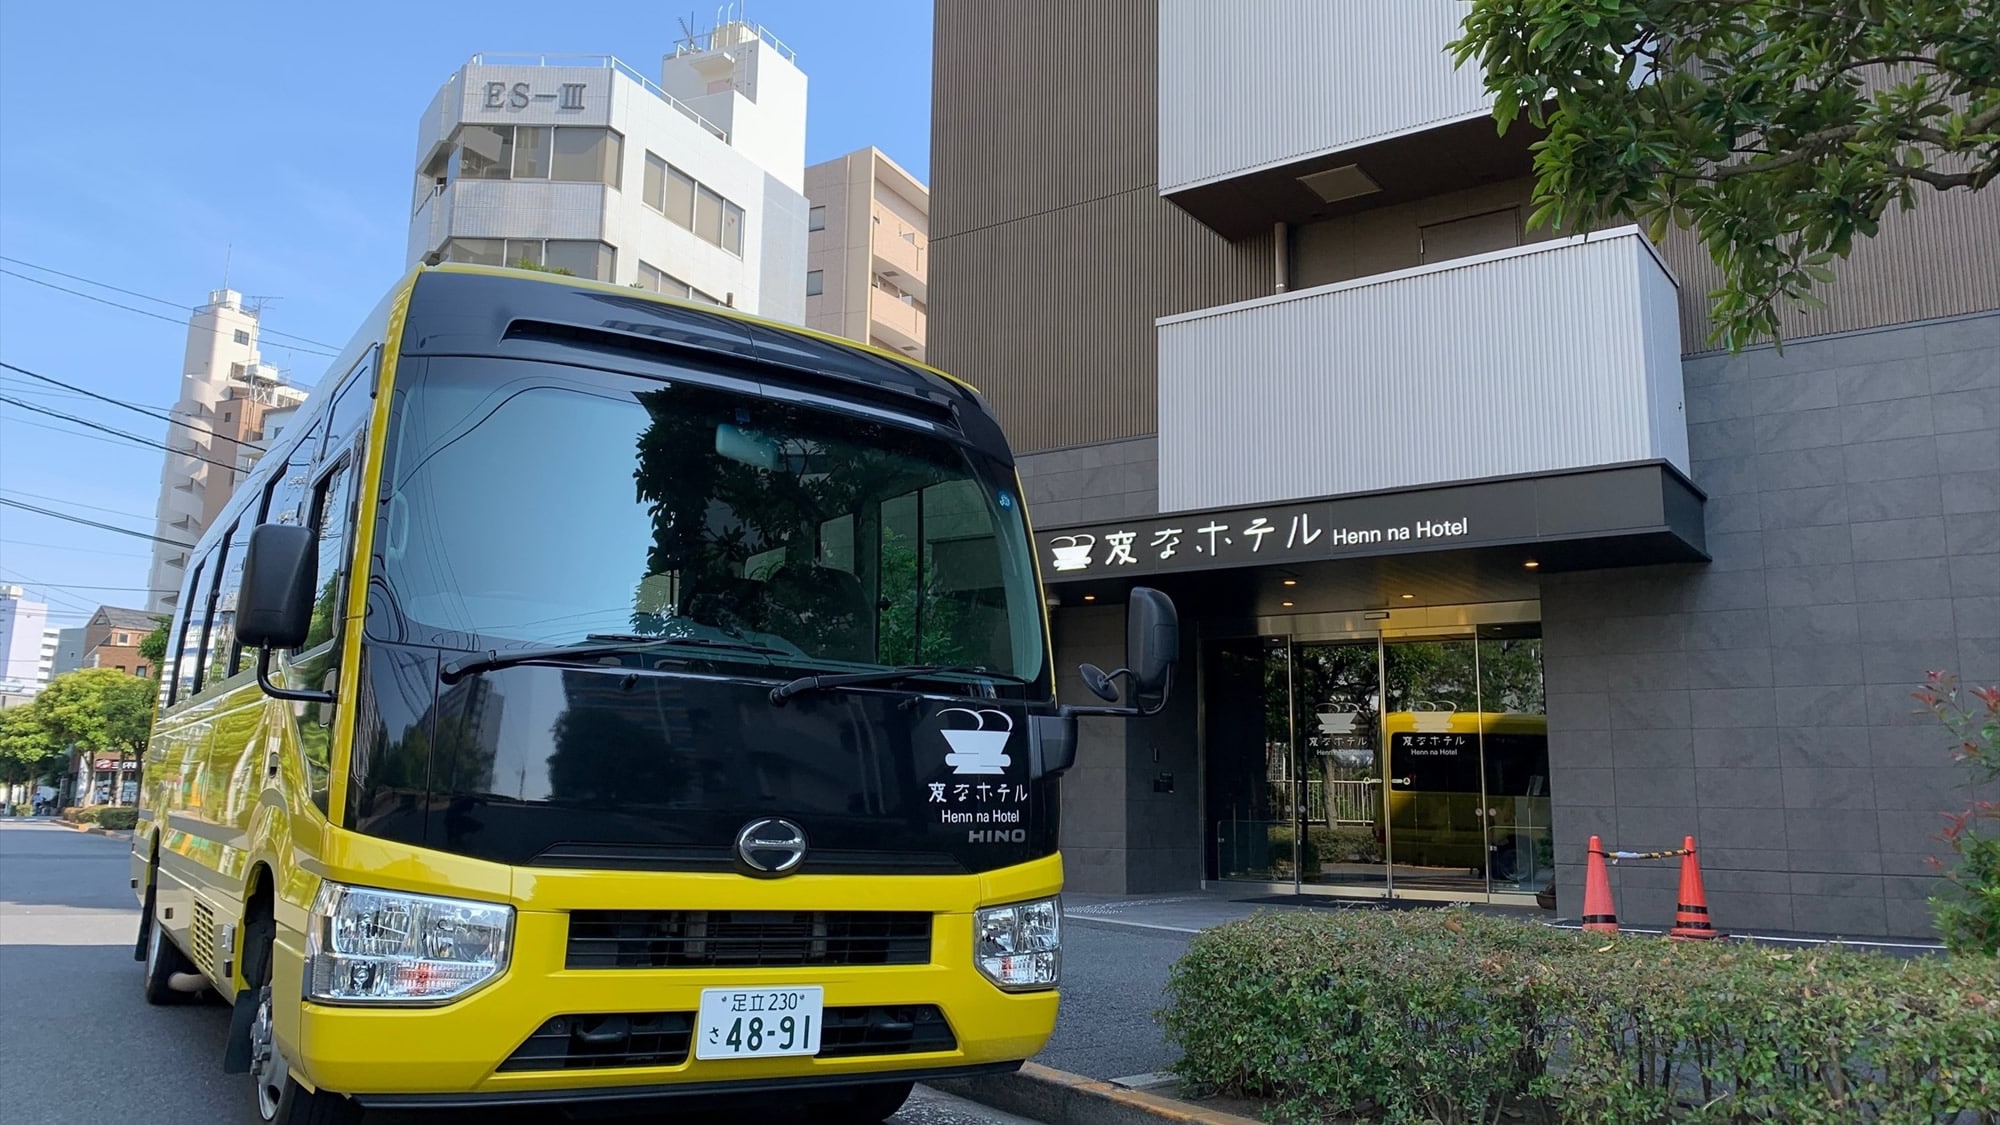 Bus antar-jemput gratis ke Tokyo Disney Resort (sekitar 30 menit) beroperasi setiap hari!